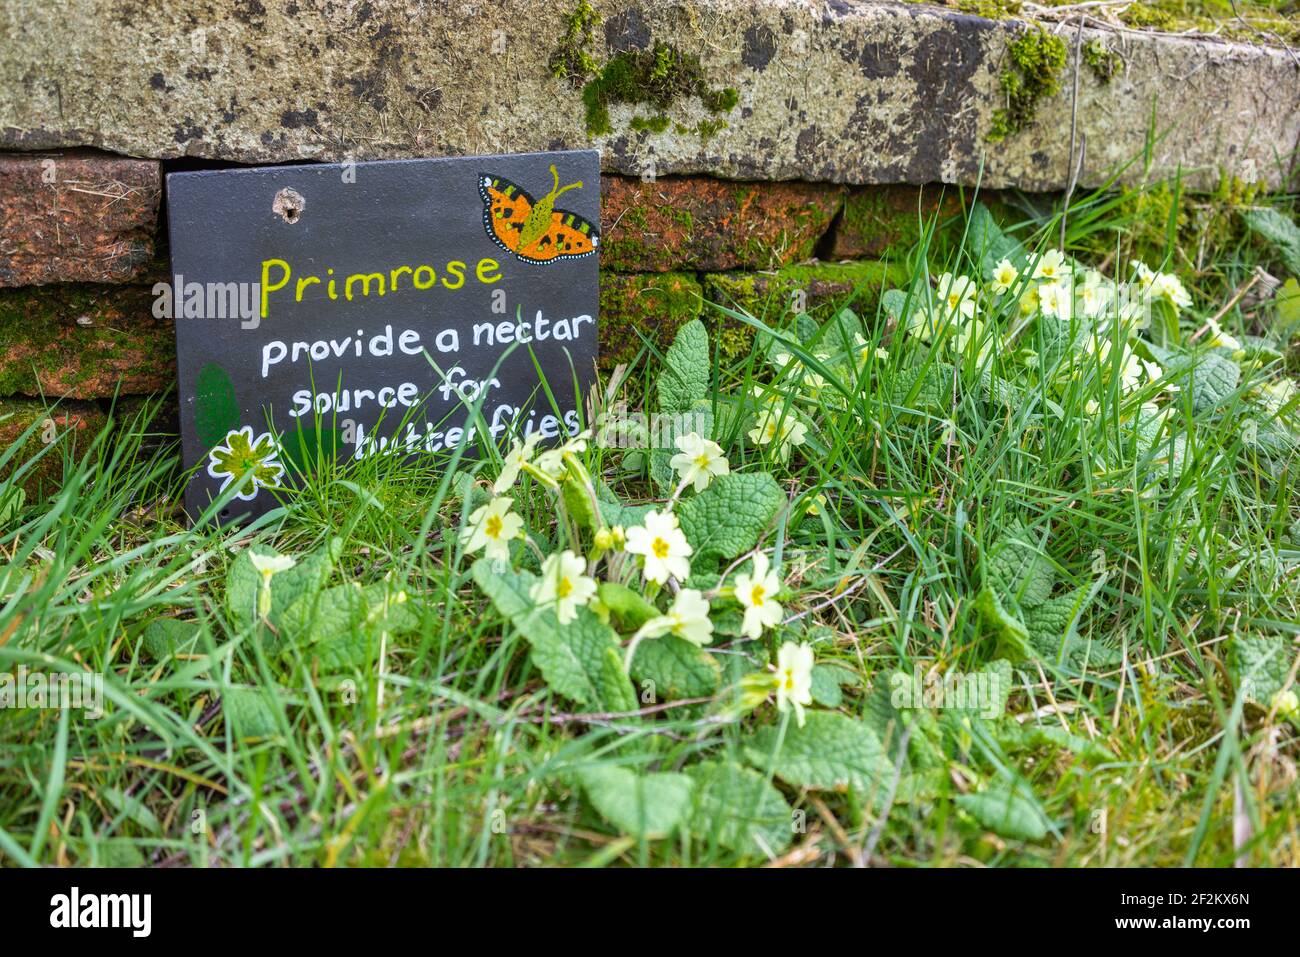 Segno che legge 'Primrose fornire una fonte di nettare per le farfalle' accanto ad un grappolo di fiori di Primrose gialli, conservazione della natura, a Southampton, Regno Unito Foto Stock